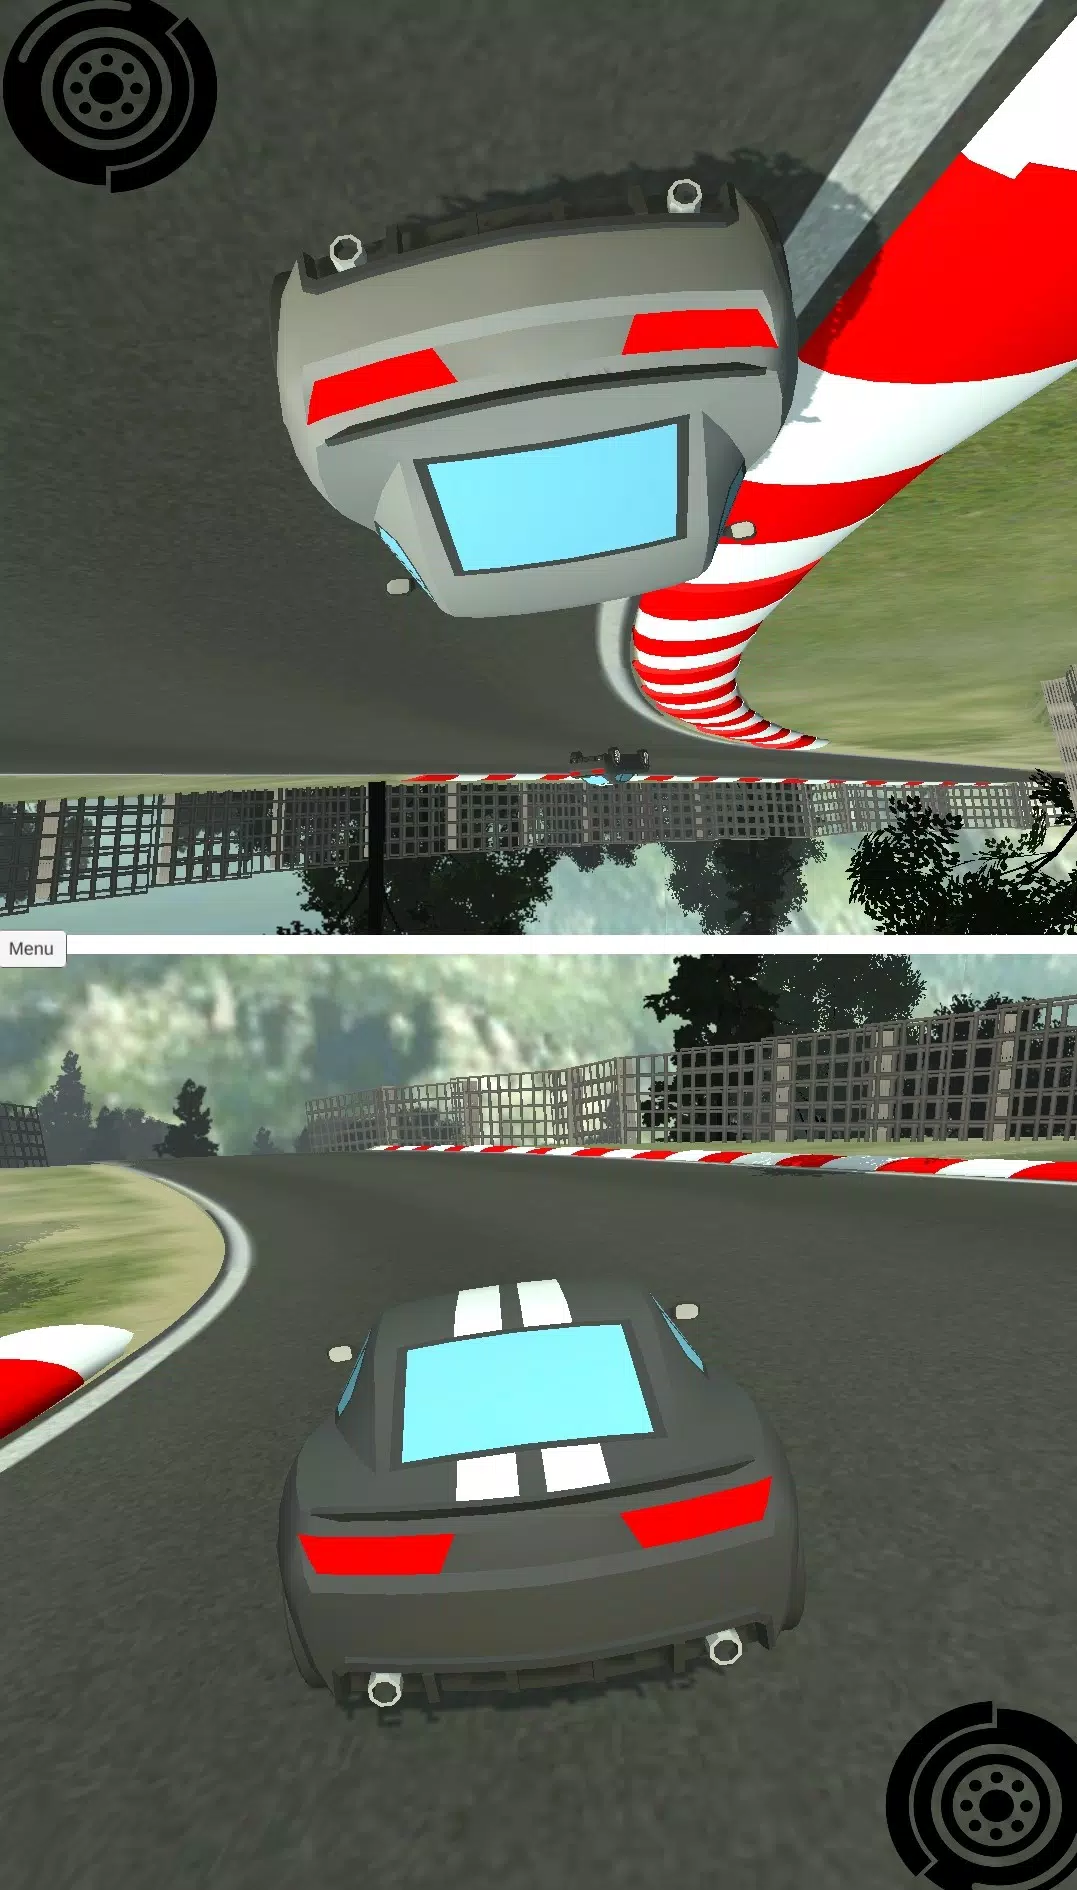 Download do APK de 2 Player Racing 3D para Android